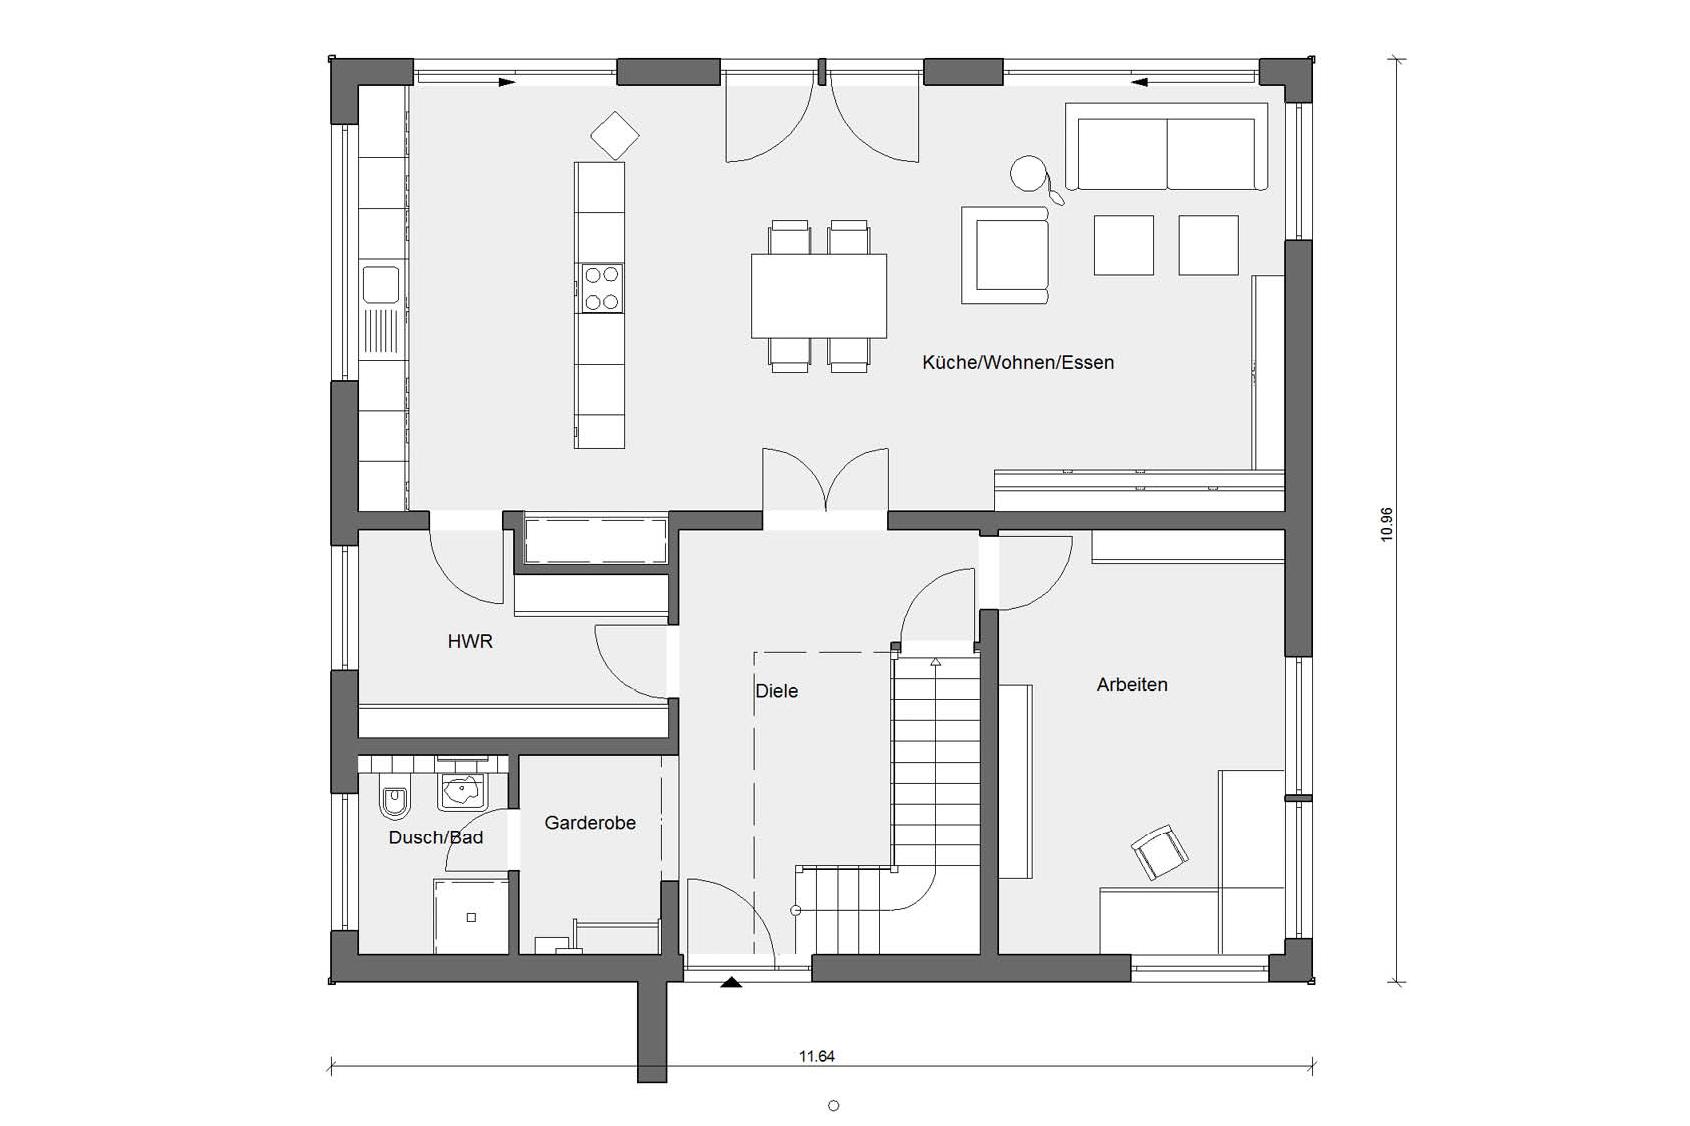 Ground floor plan E 20-250.1 House with lamella facade